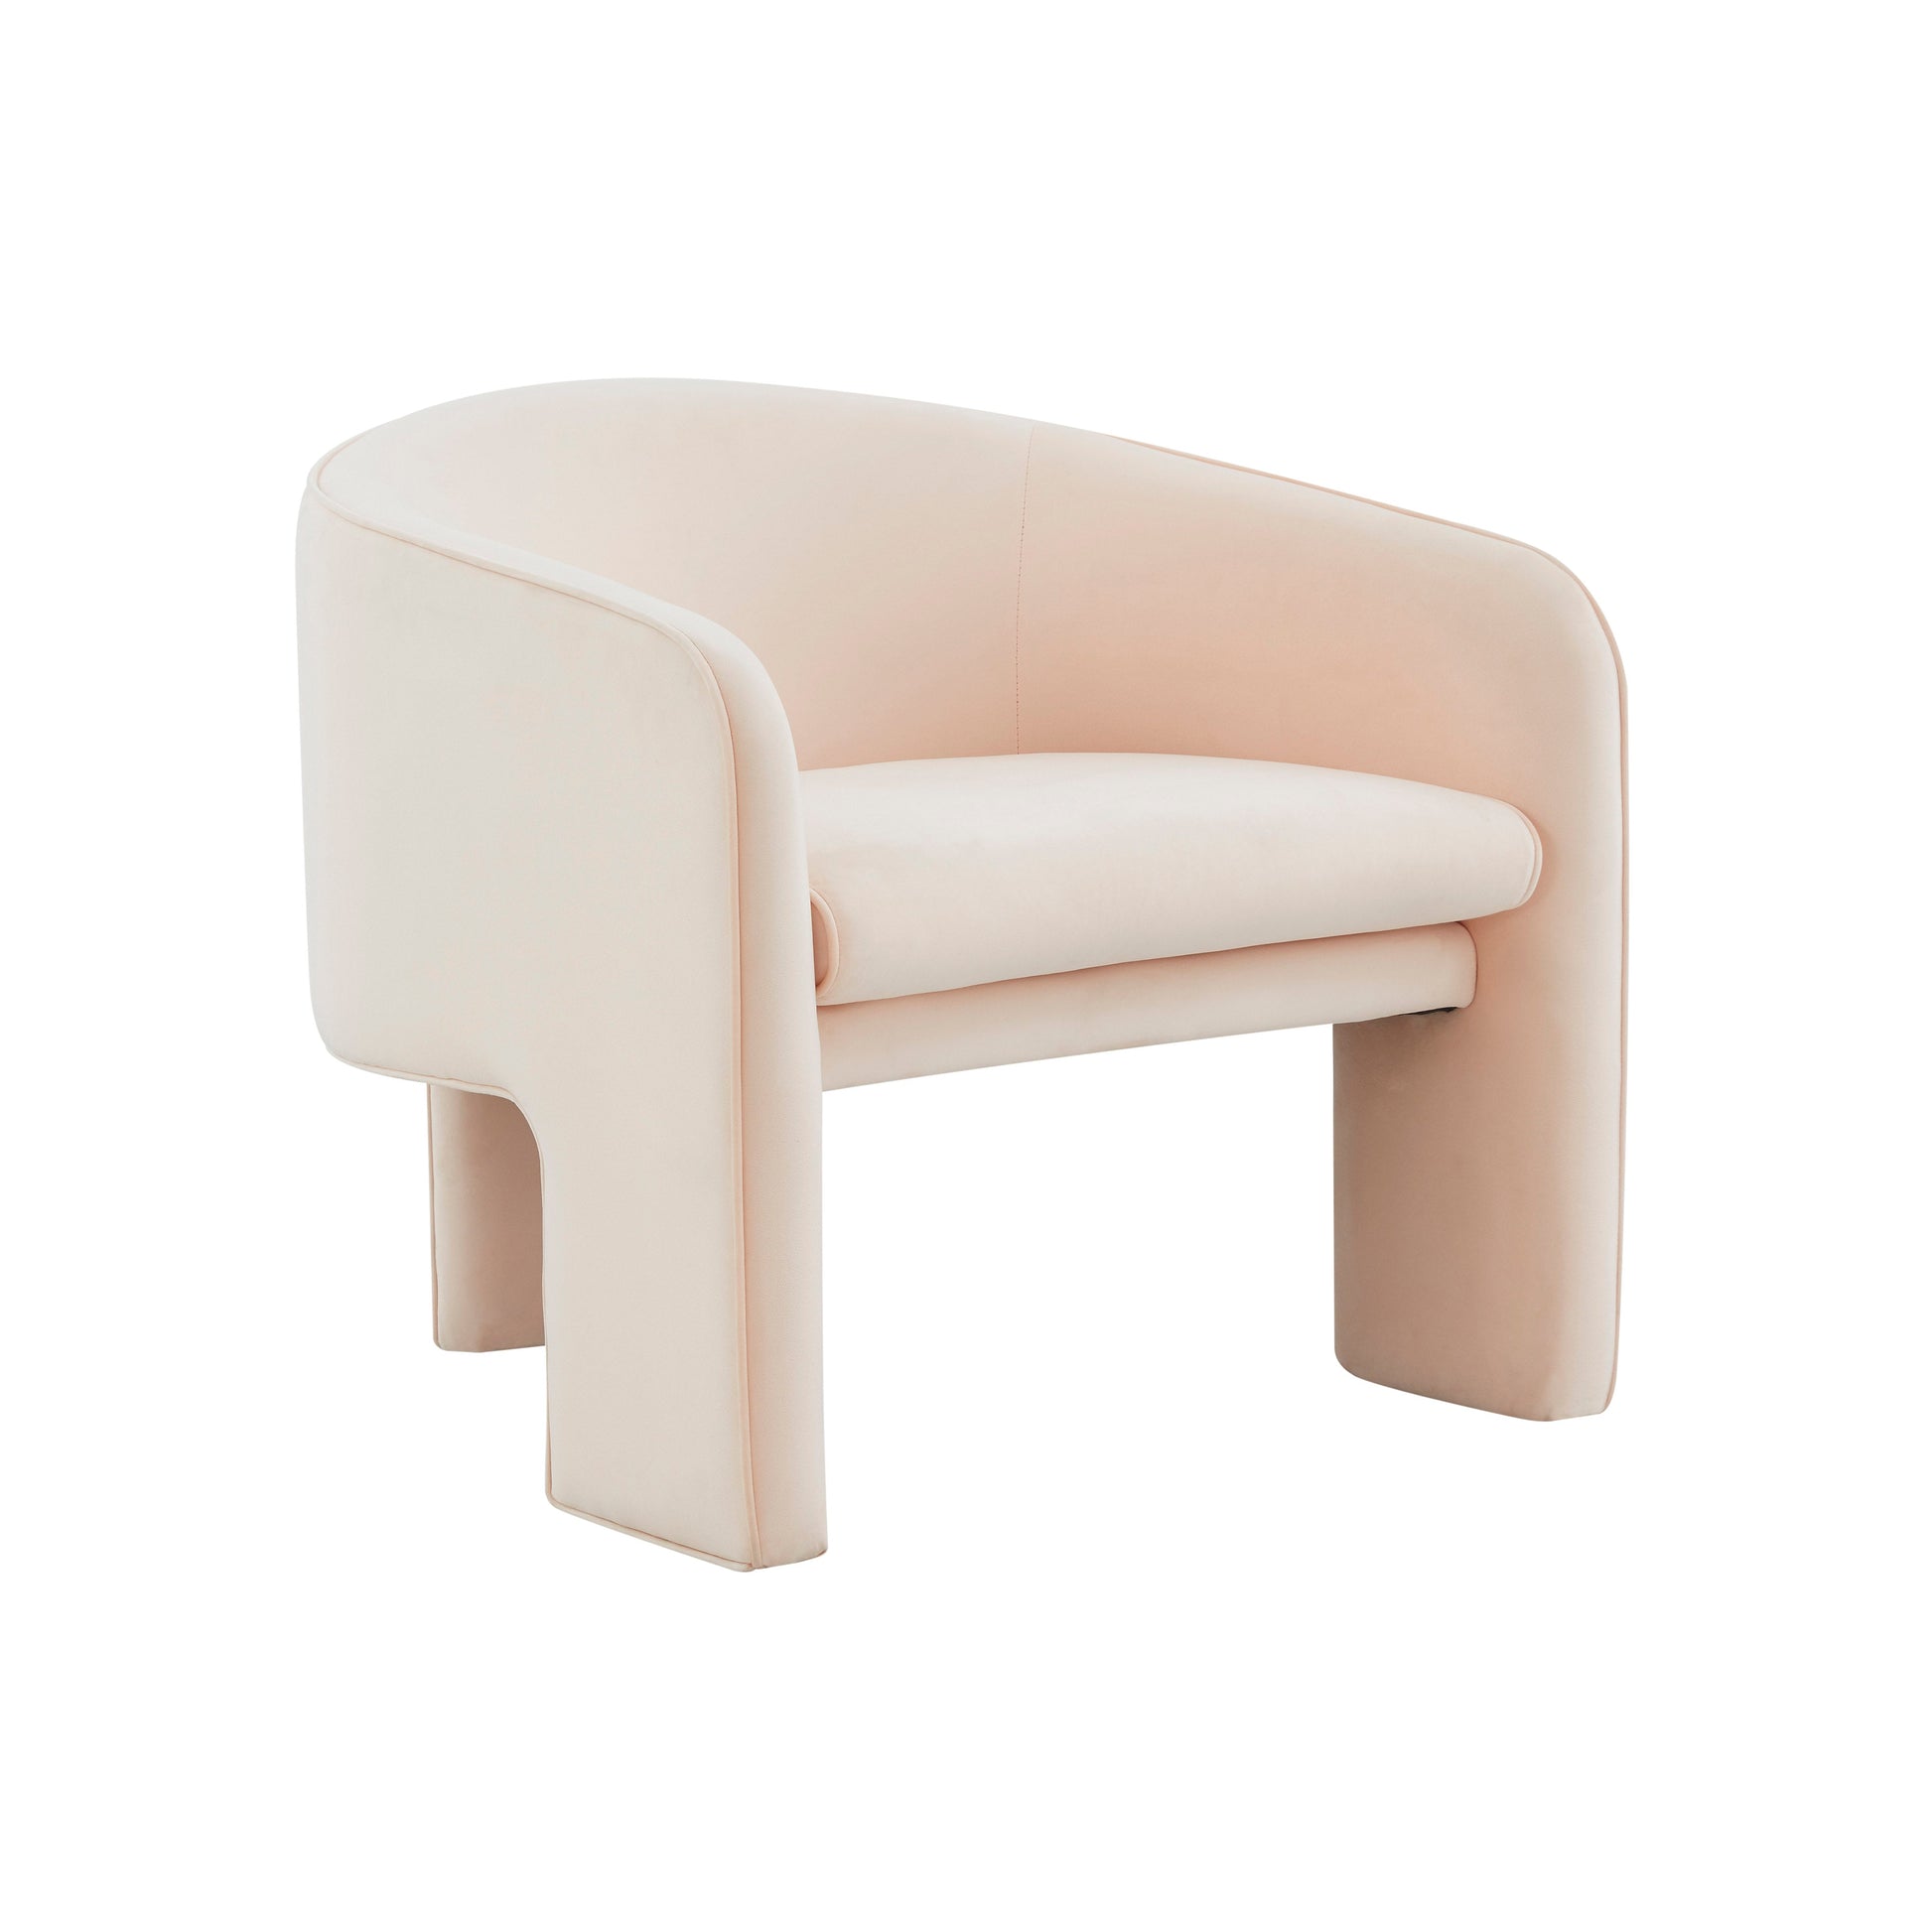 Marla Peche Velvet Accent Chair by TOV